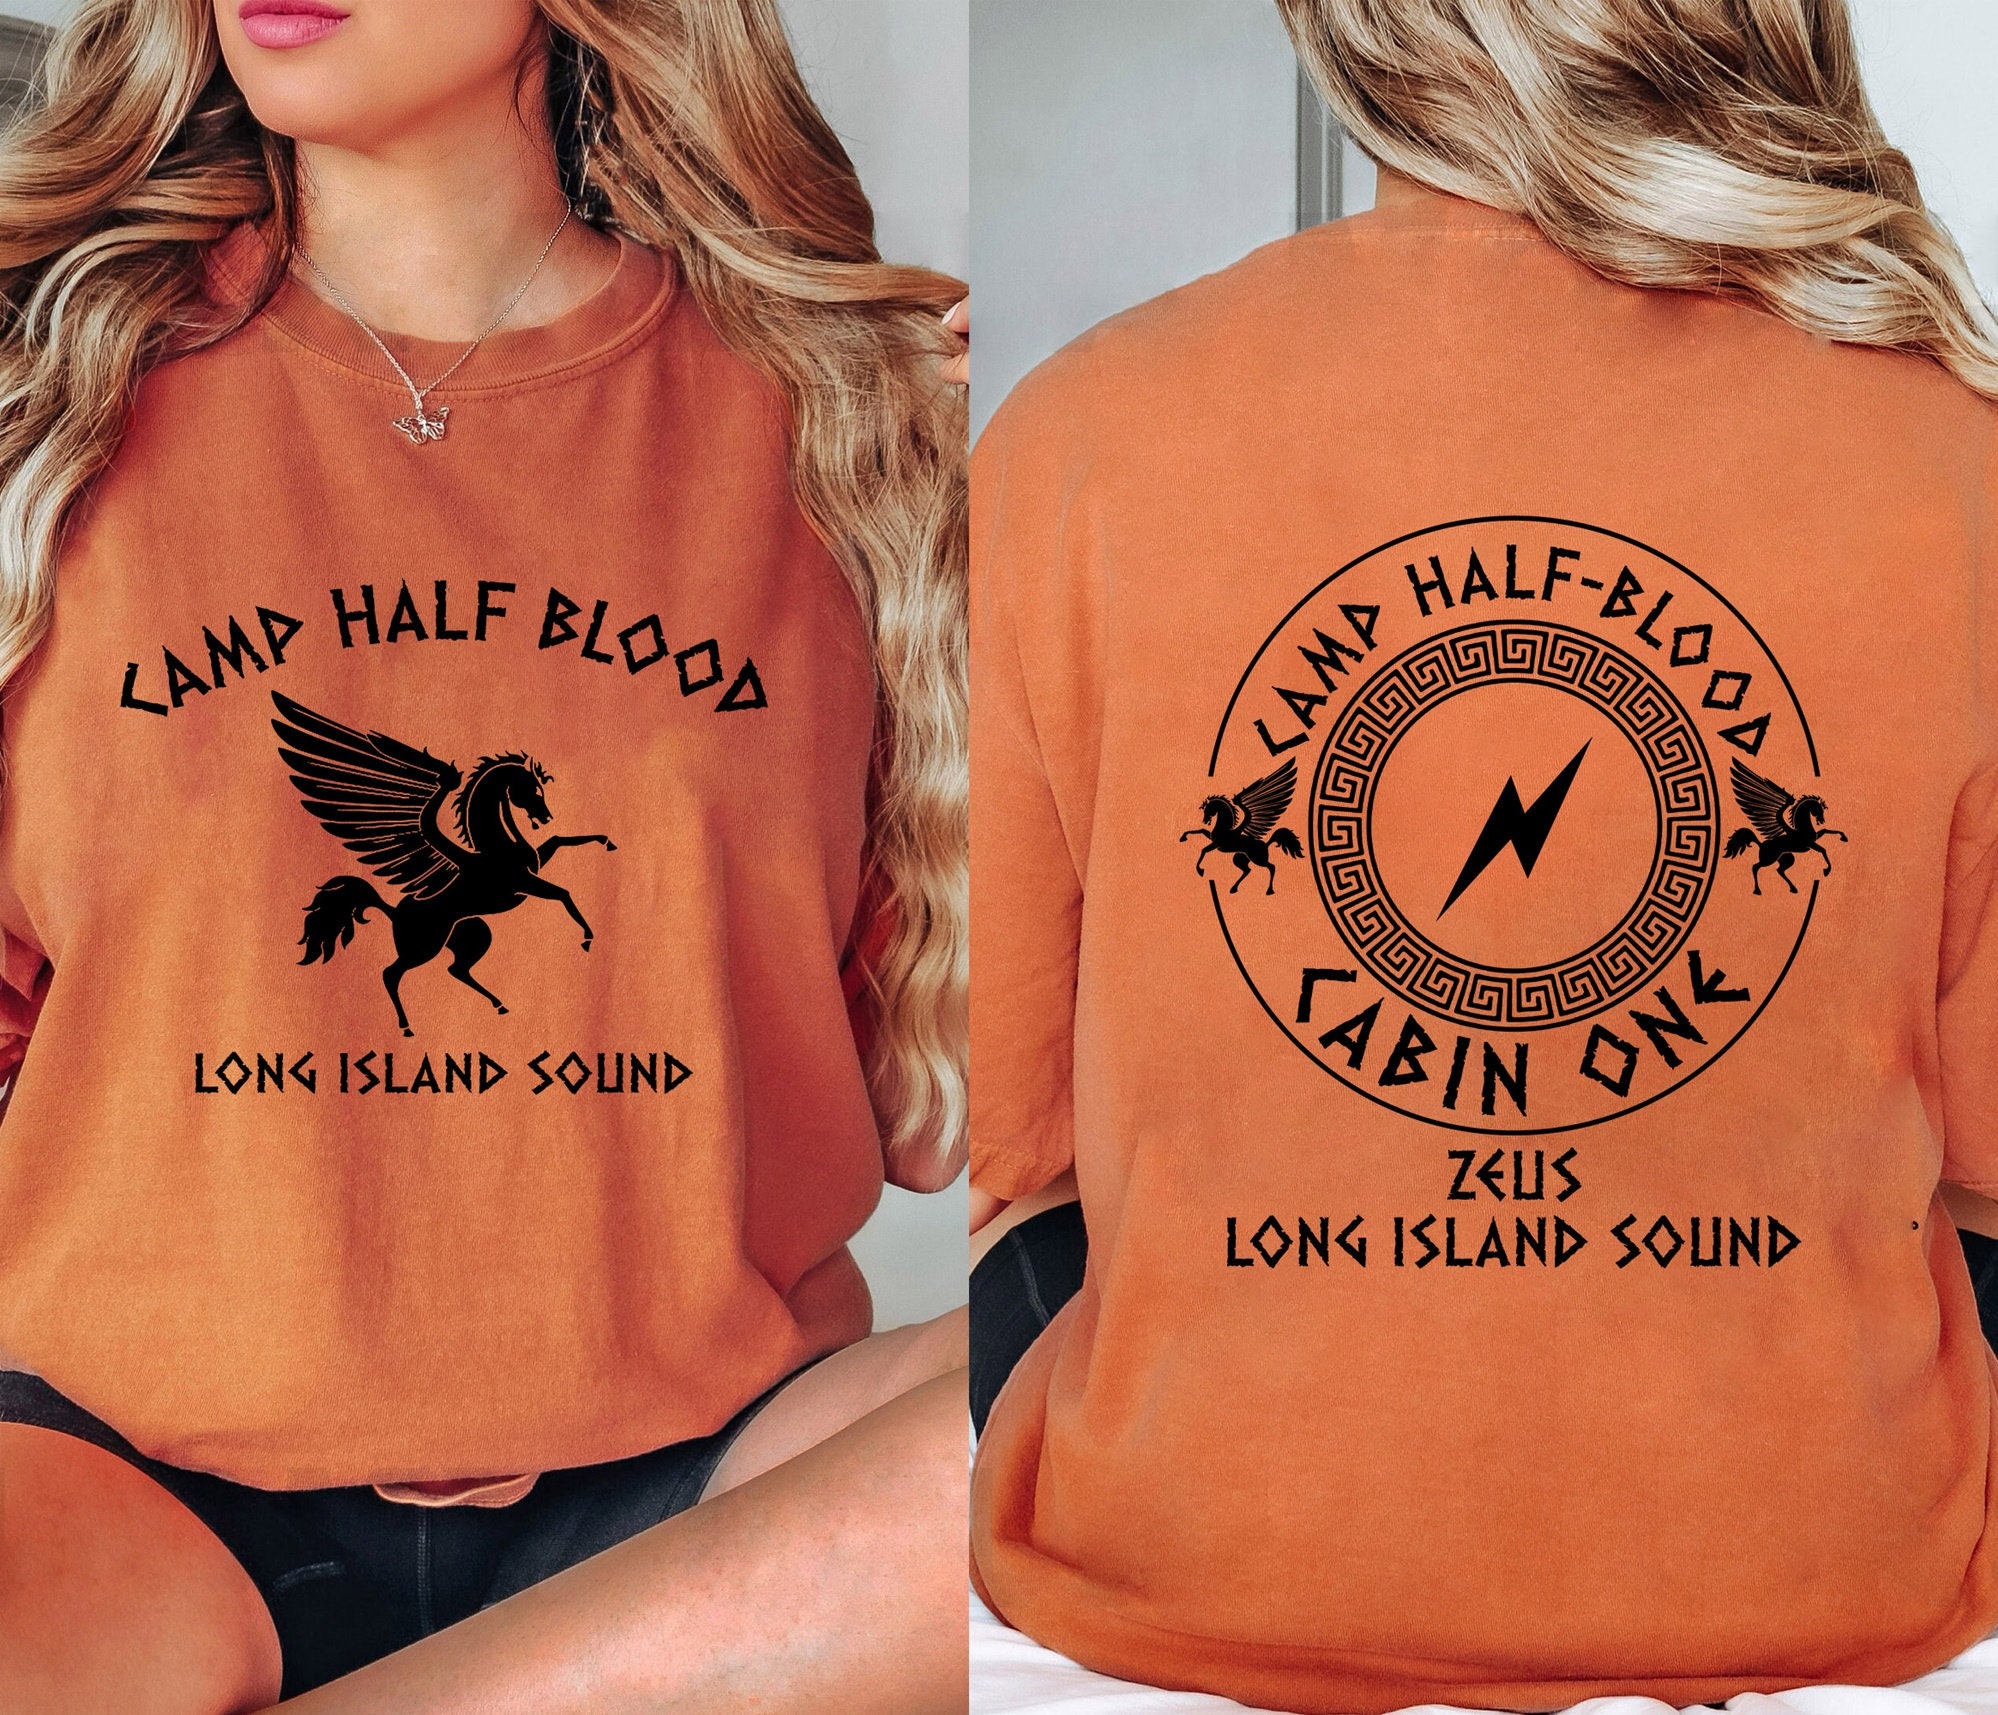 Camiseta camp half blood: Encontre Promoções e o Menor Preço No Zoom